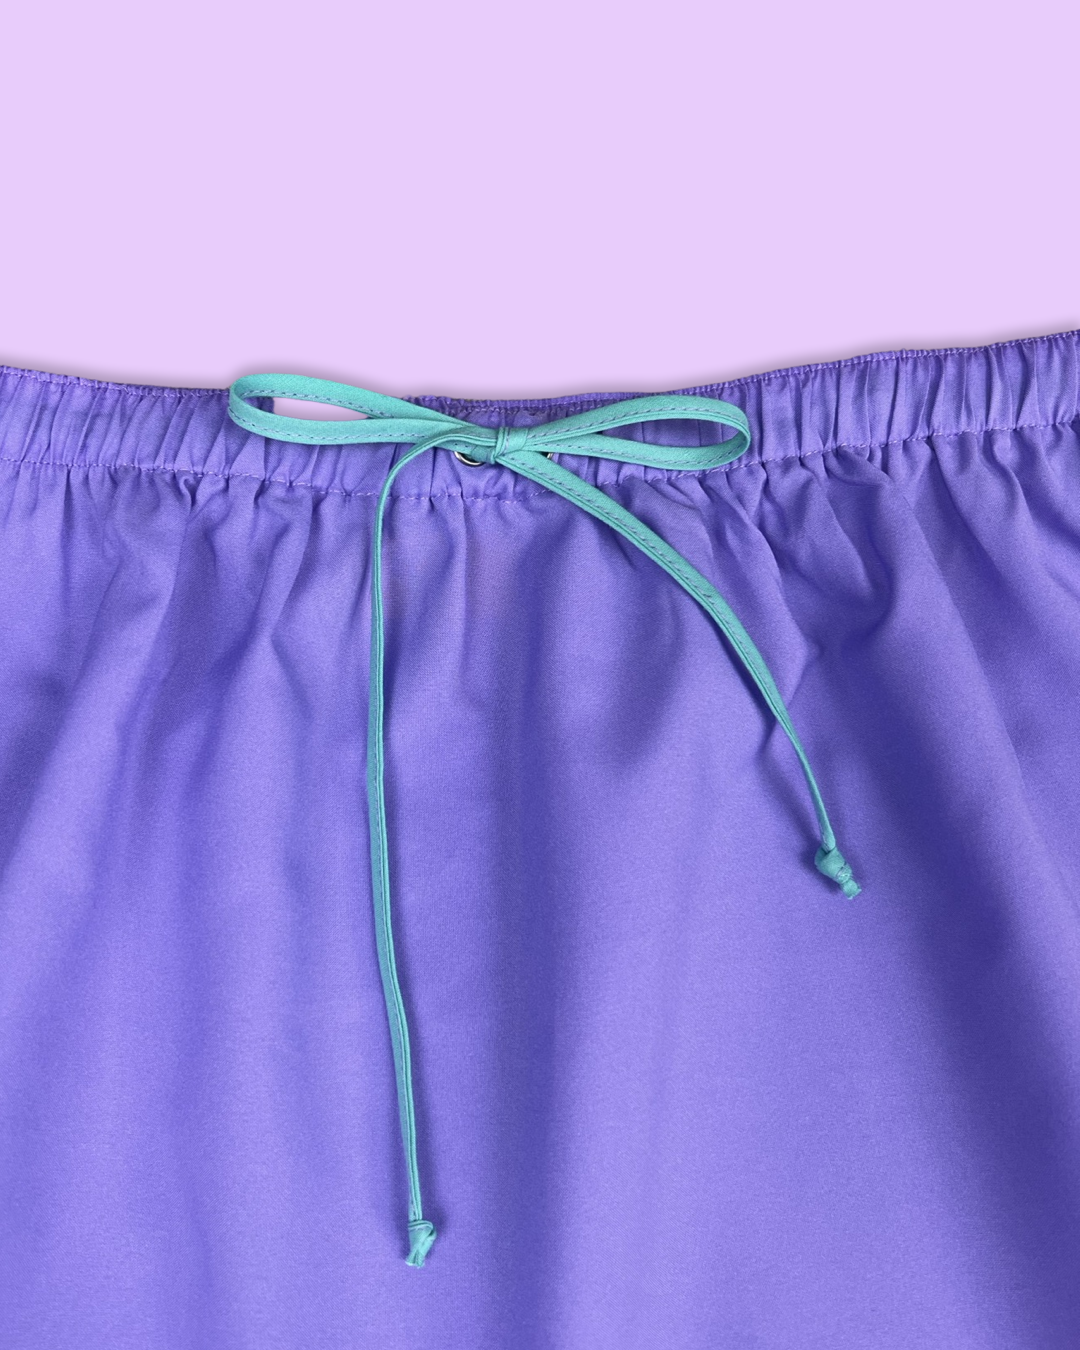 Purple/Teal Mini Skirt Set